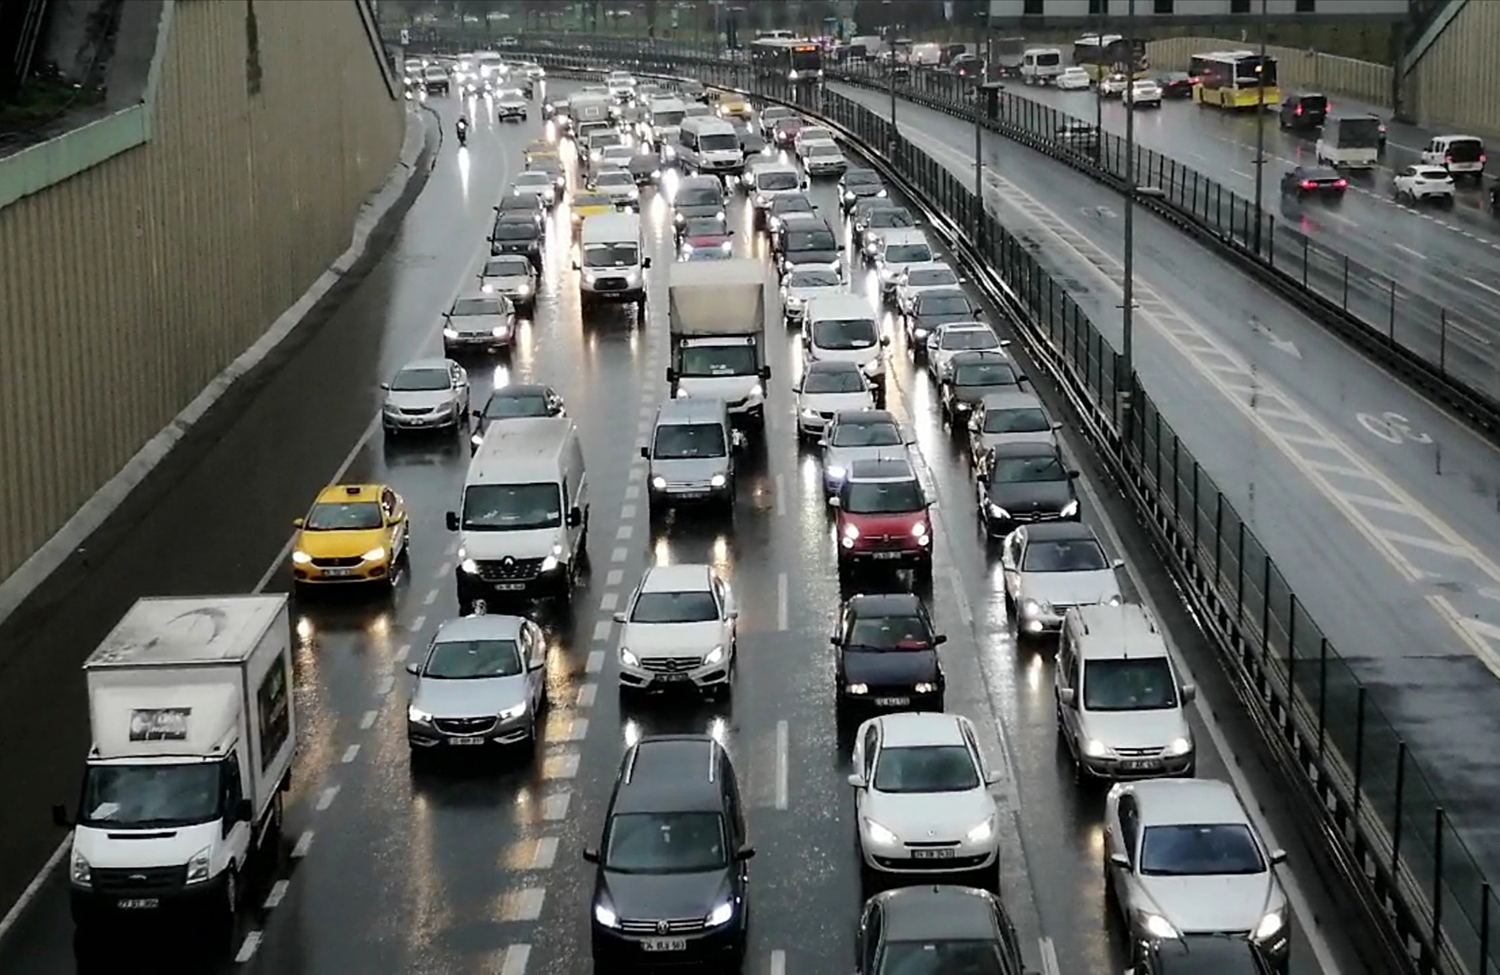 stanbul'da etkili olan yamur trafik younluuna neden oldu